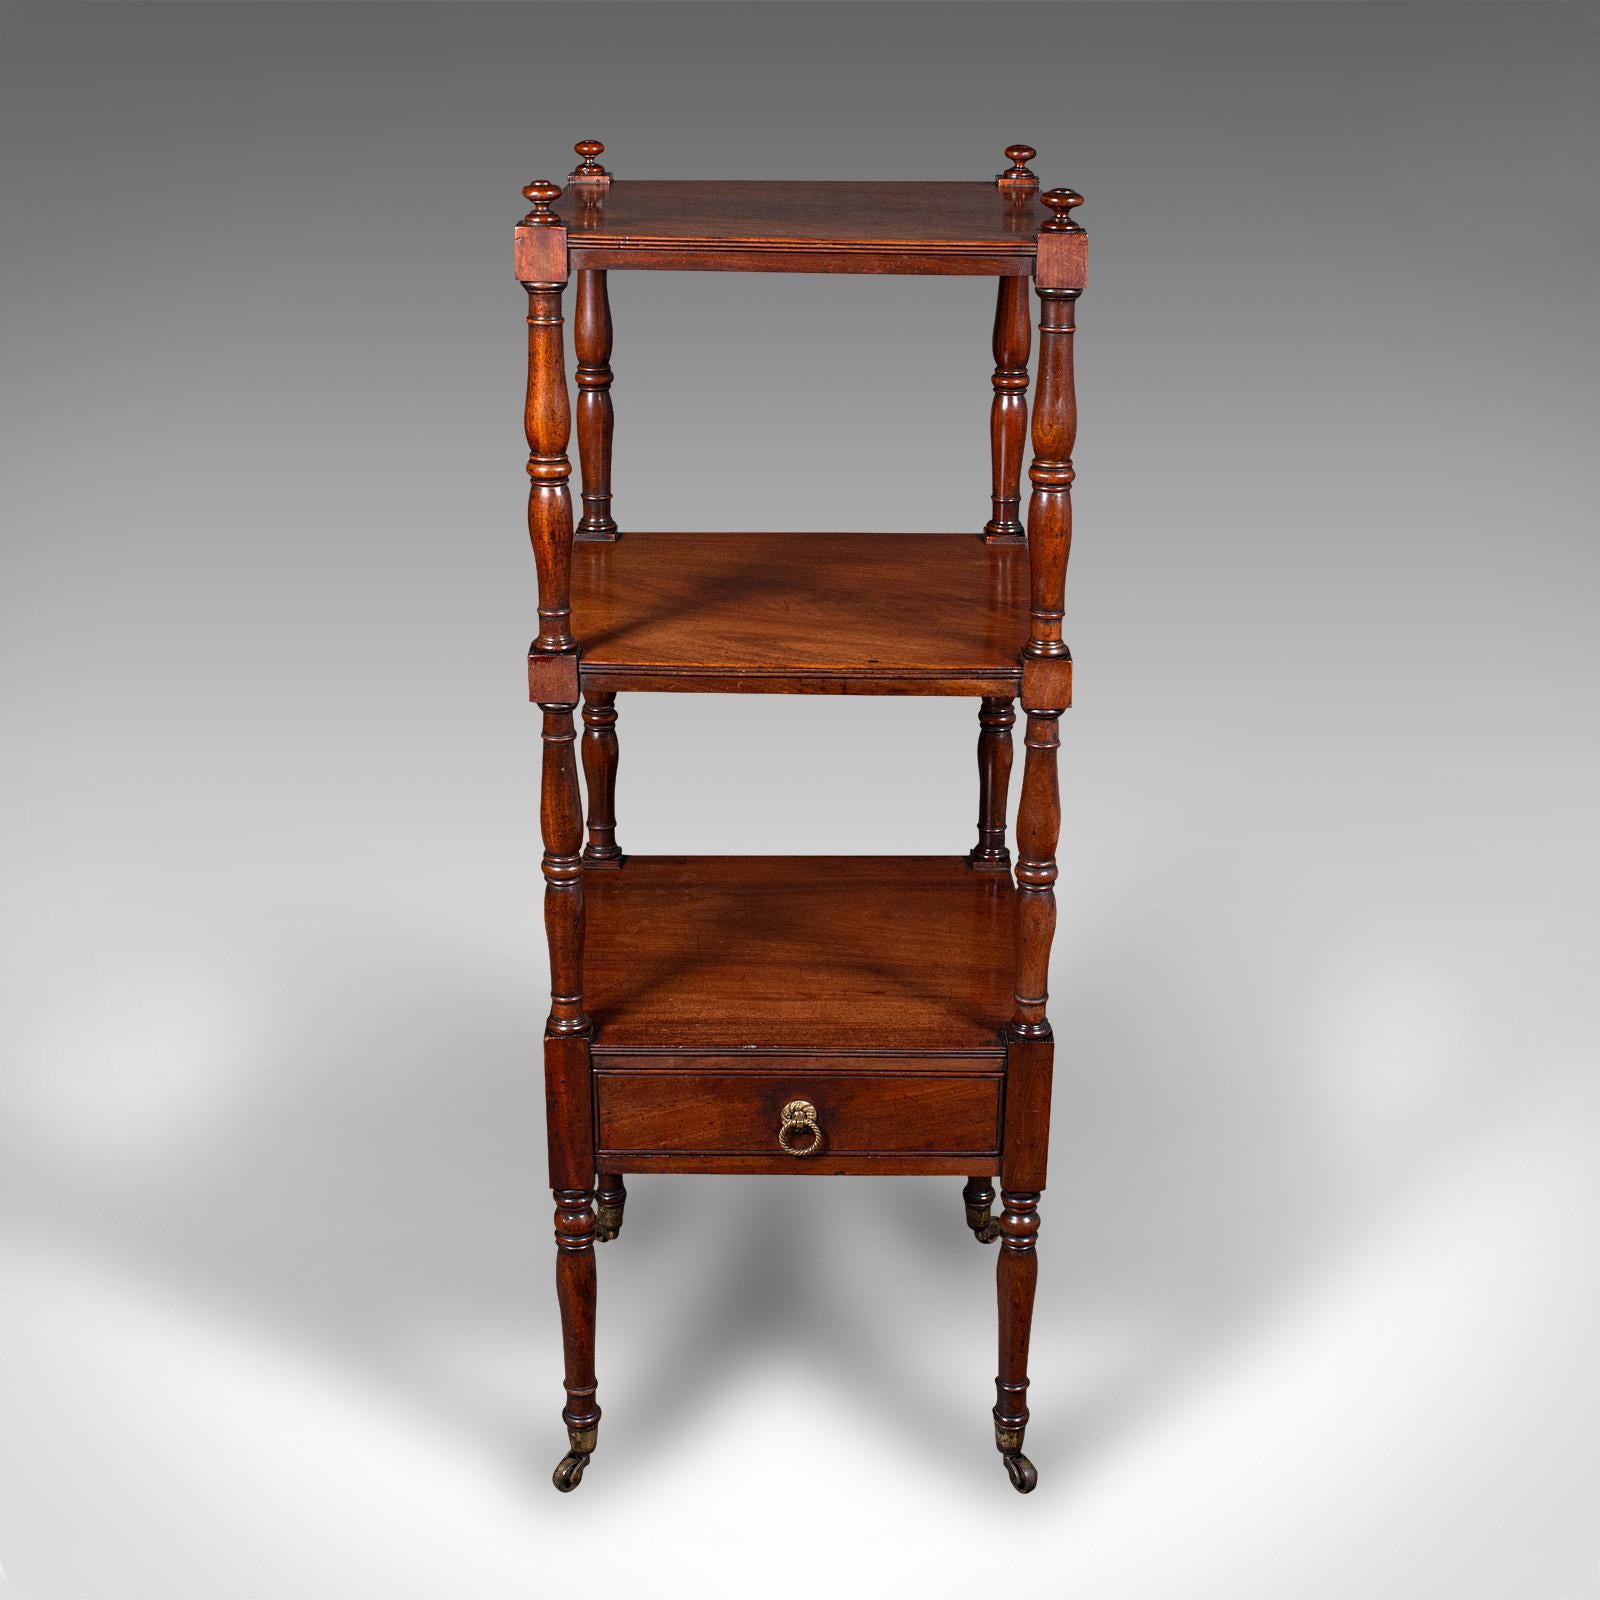 Il s'agit d'un ancien meuble à 3 étages. Présentoir ouvert anglais en acajou, datant de la période géorgienne, vers 1800.

Bel exemple de mobilier d'exposition géorgien
Présente une patine d'usage désirable et est en bon état.
Les stocks